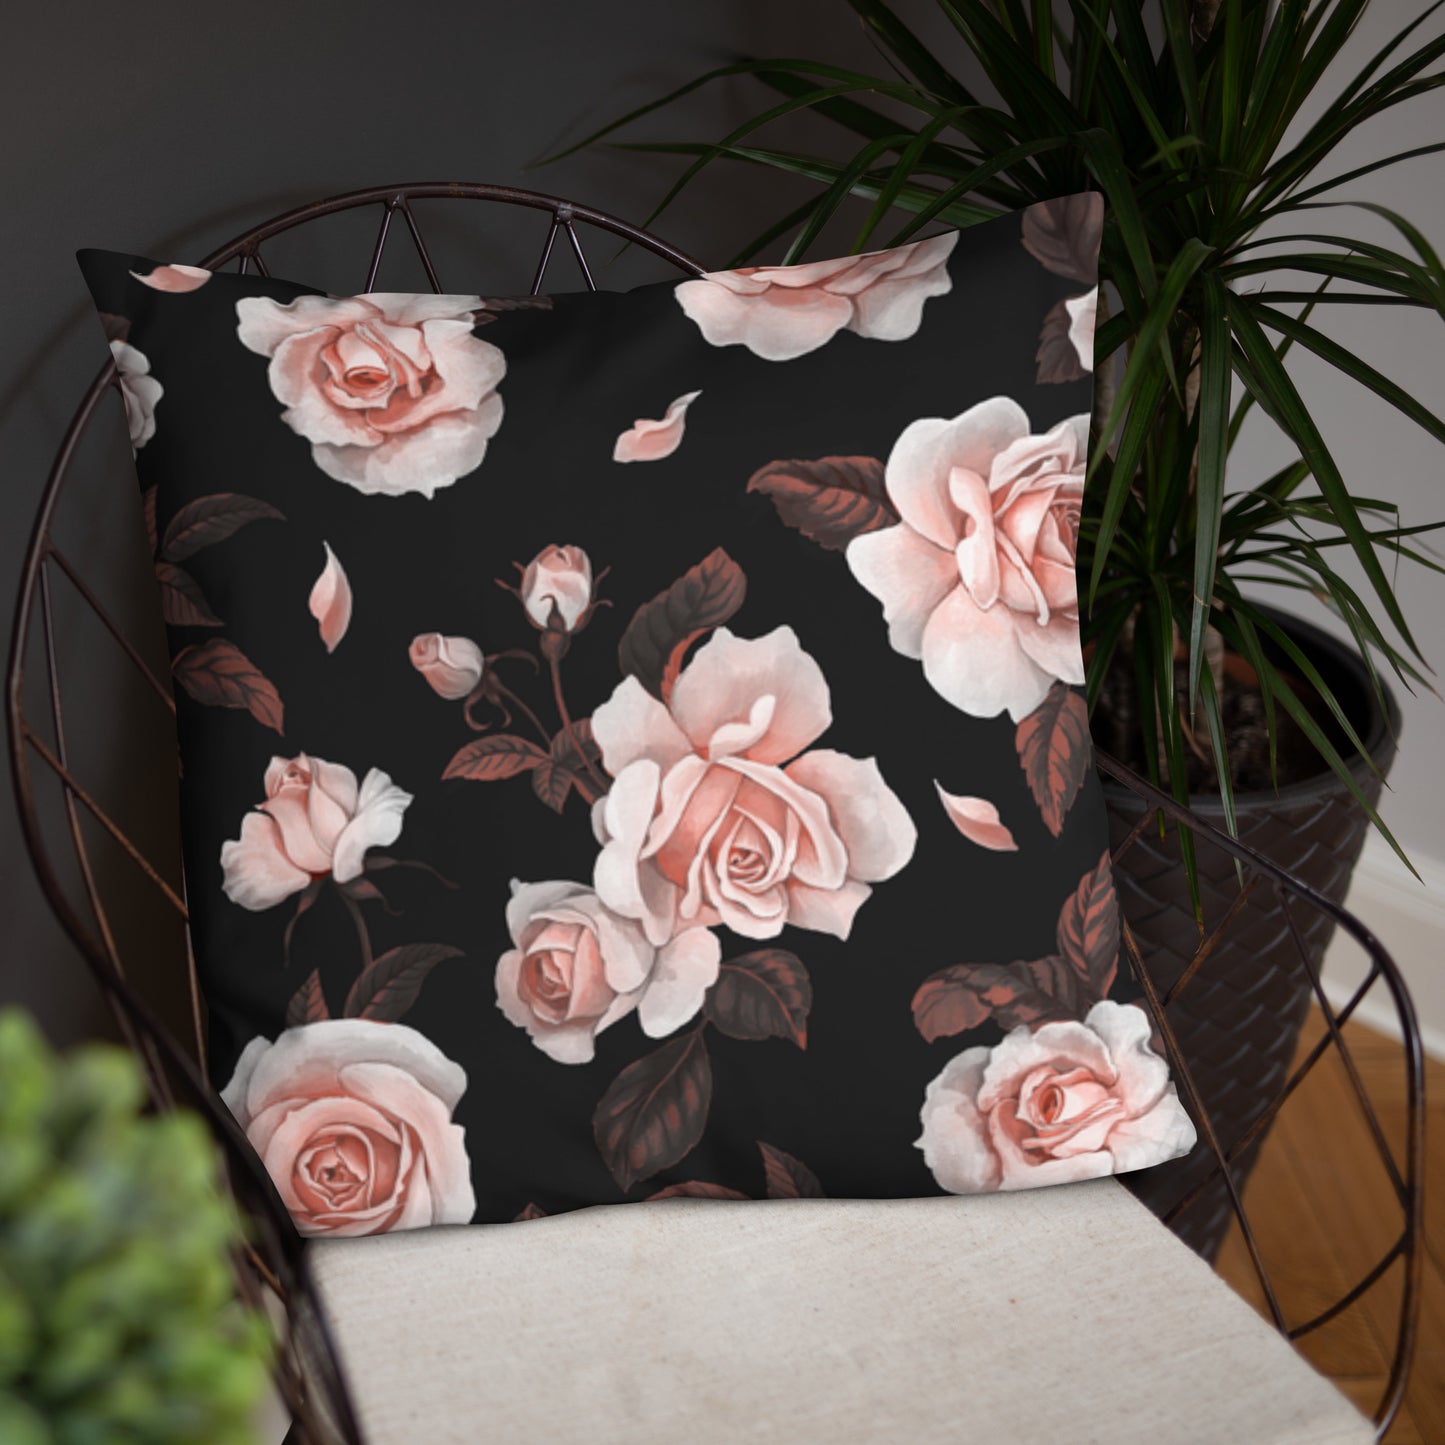 Basic Pillow (Best Basic Pillow Flower Pattern - Model 0011)